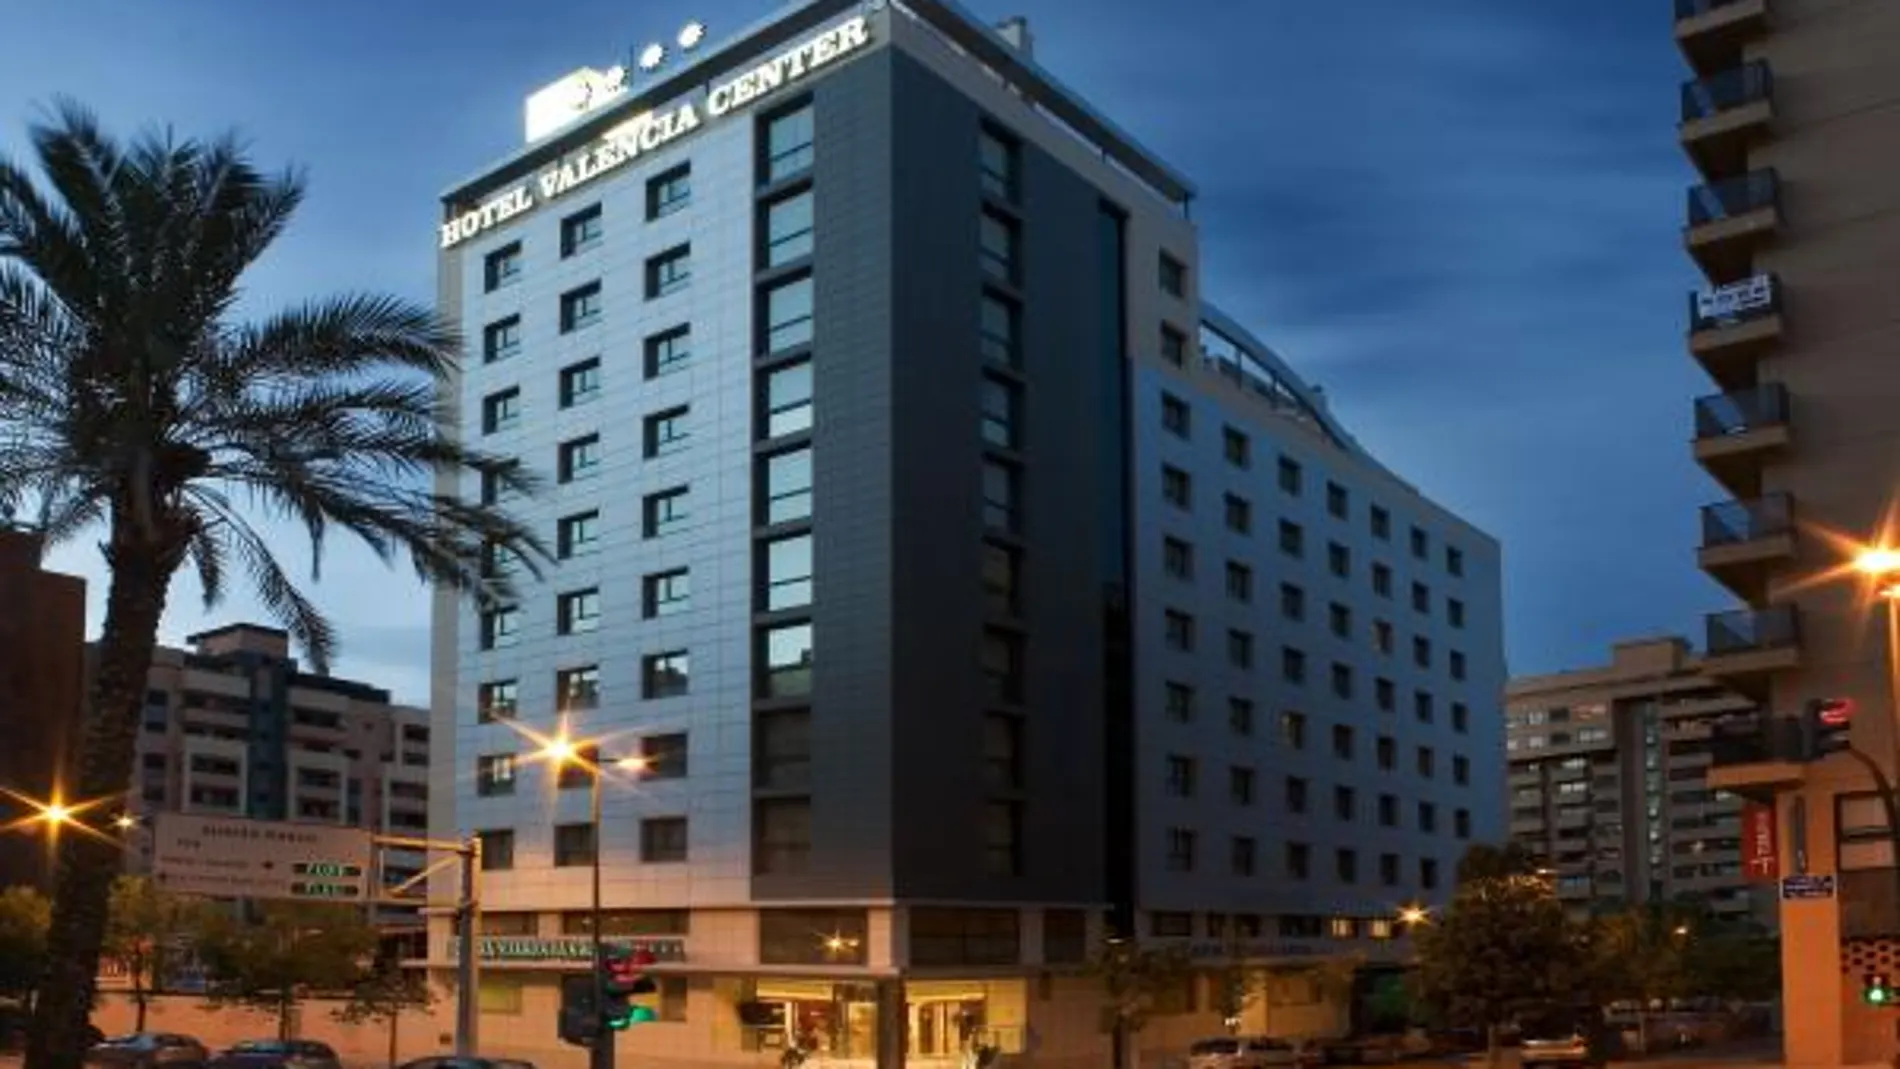 Los hoteleros piden rebajas en el IBI y otras tasas municipales